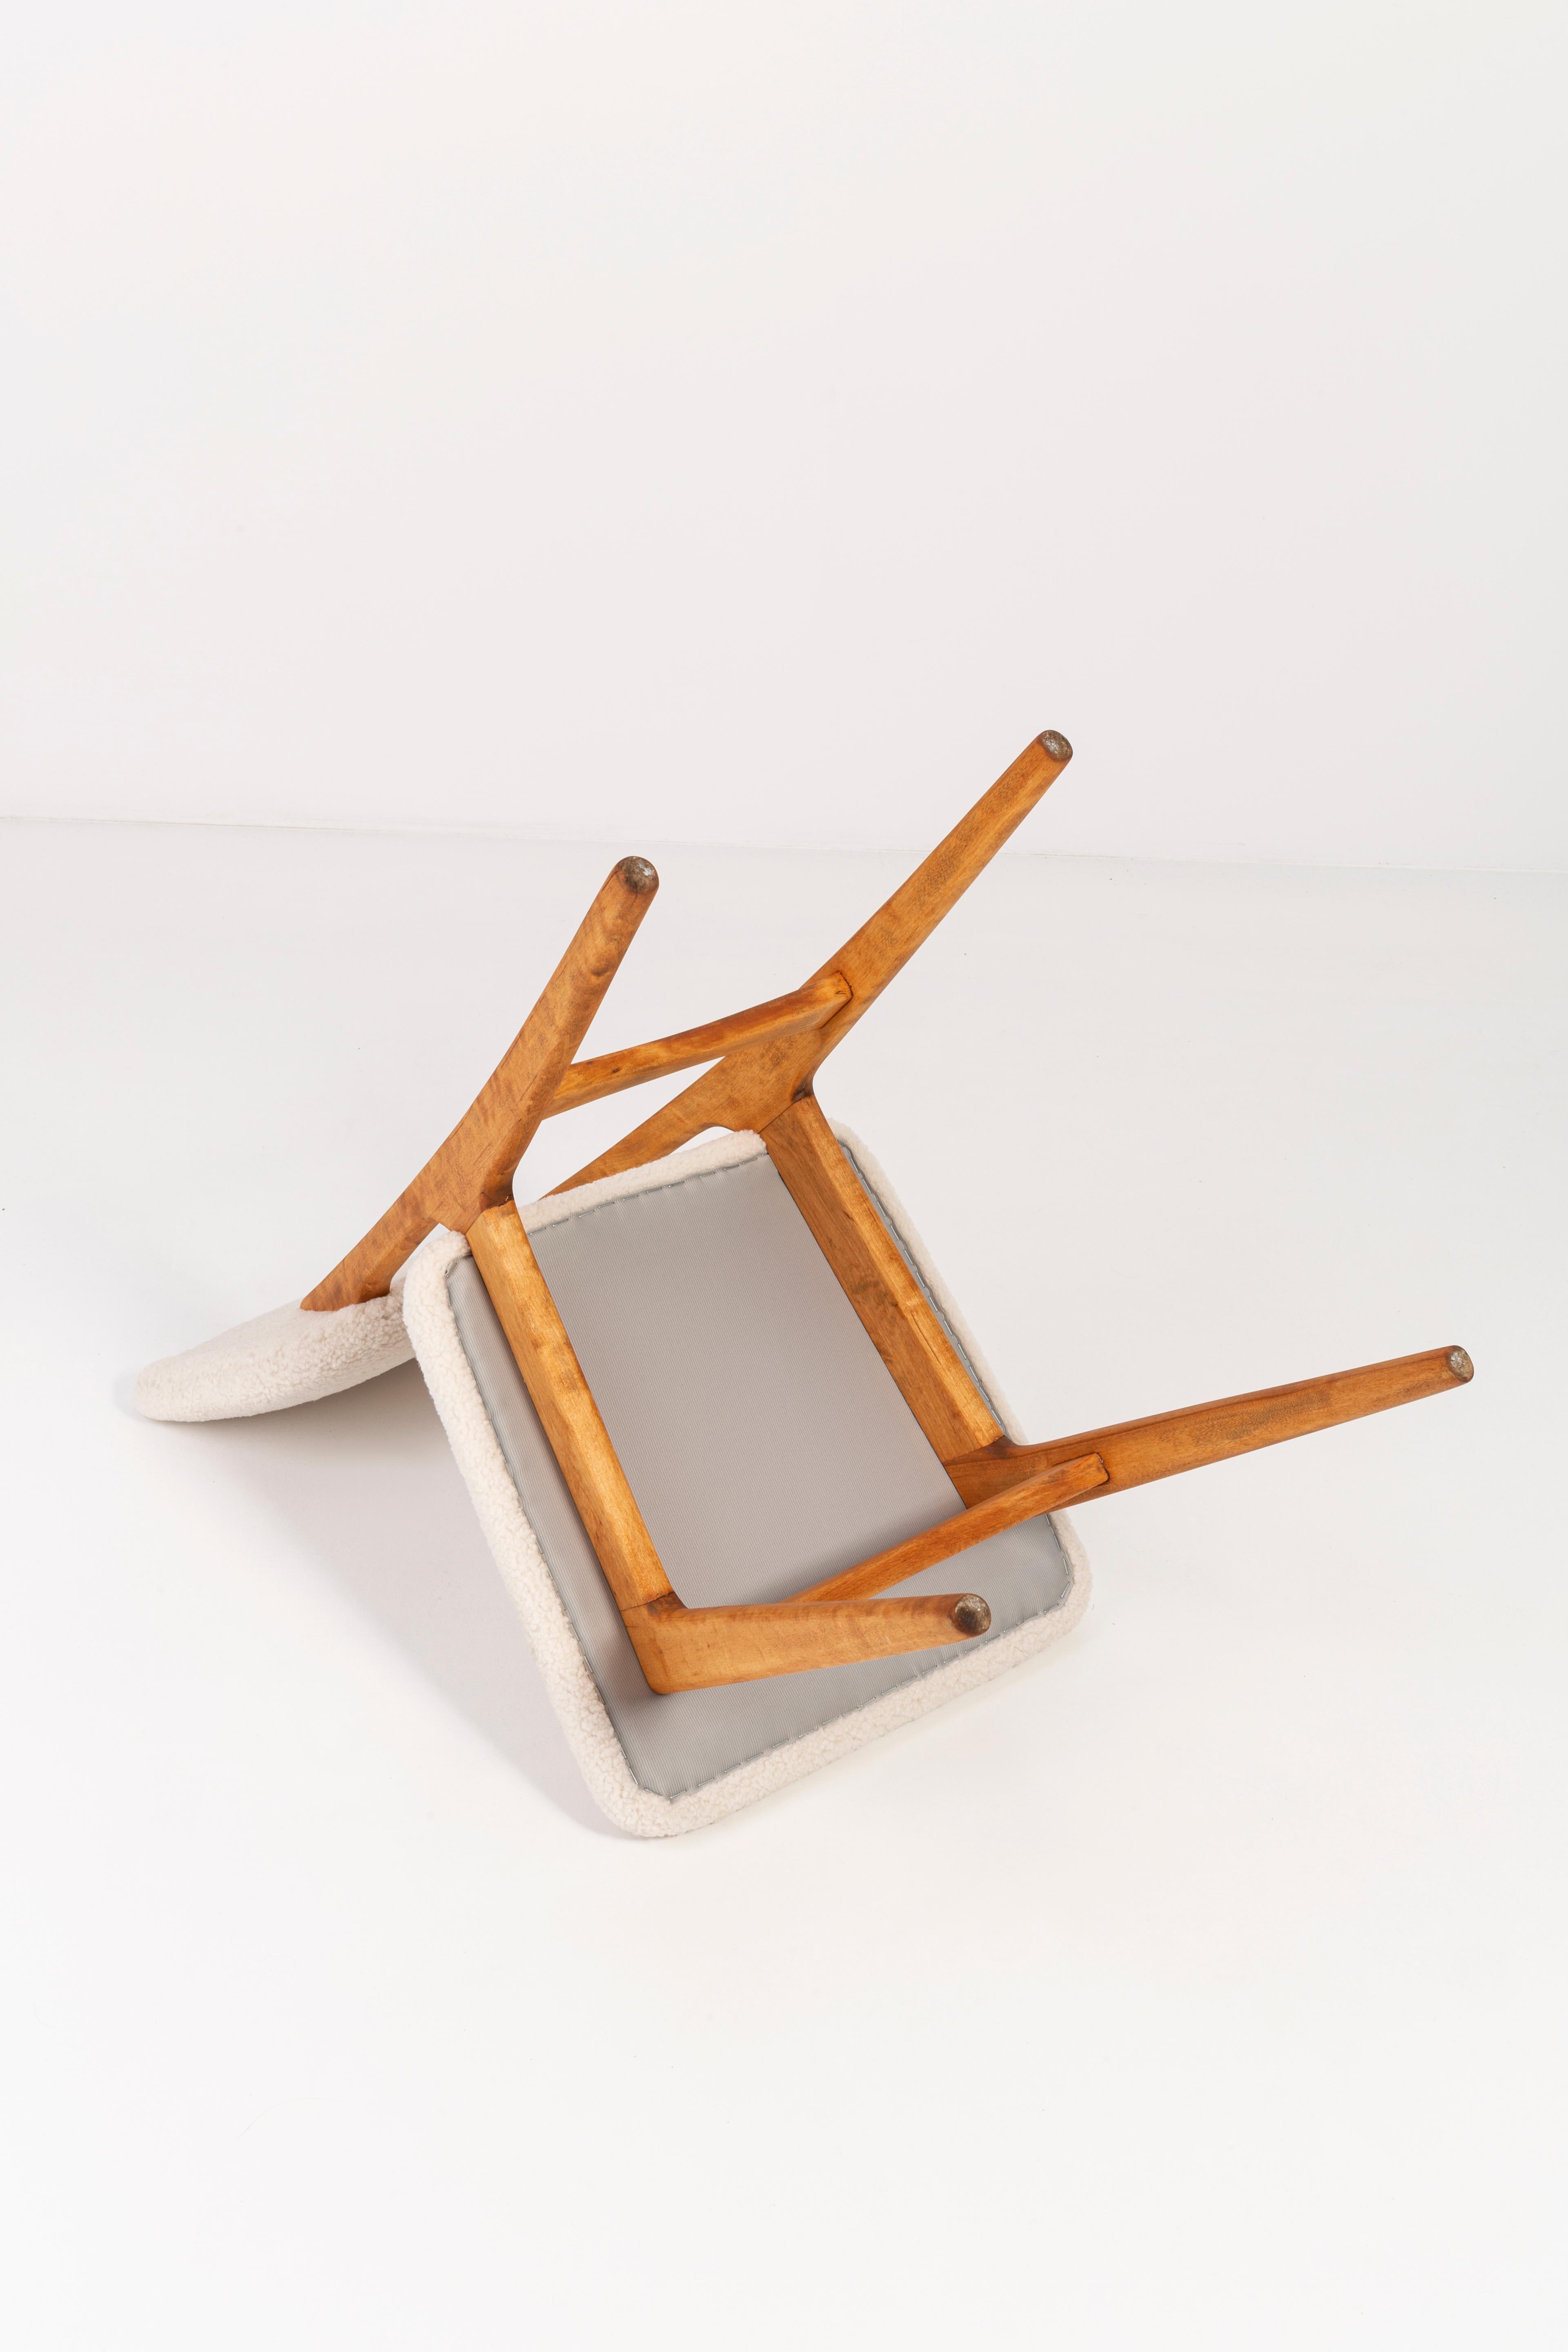 Chaise conçue par le professeur Rajmund Halas. Fabriqué en bois de hêtre. Le fauteuil a subi une rénovation complète de la tapisserie et les boiseries ont été rafraîchies. L'assise et le dossier sont habillés d'un tissu bouclé crème, durable et